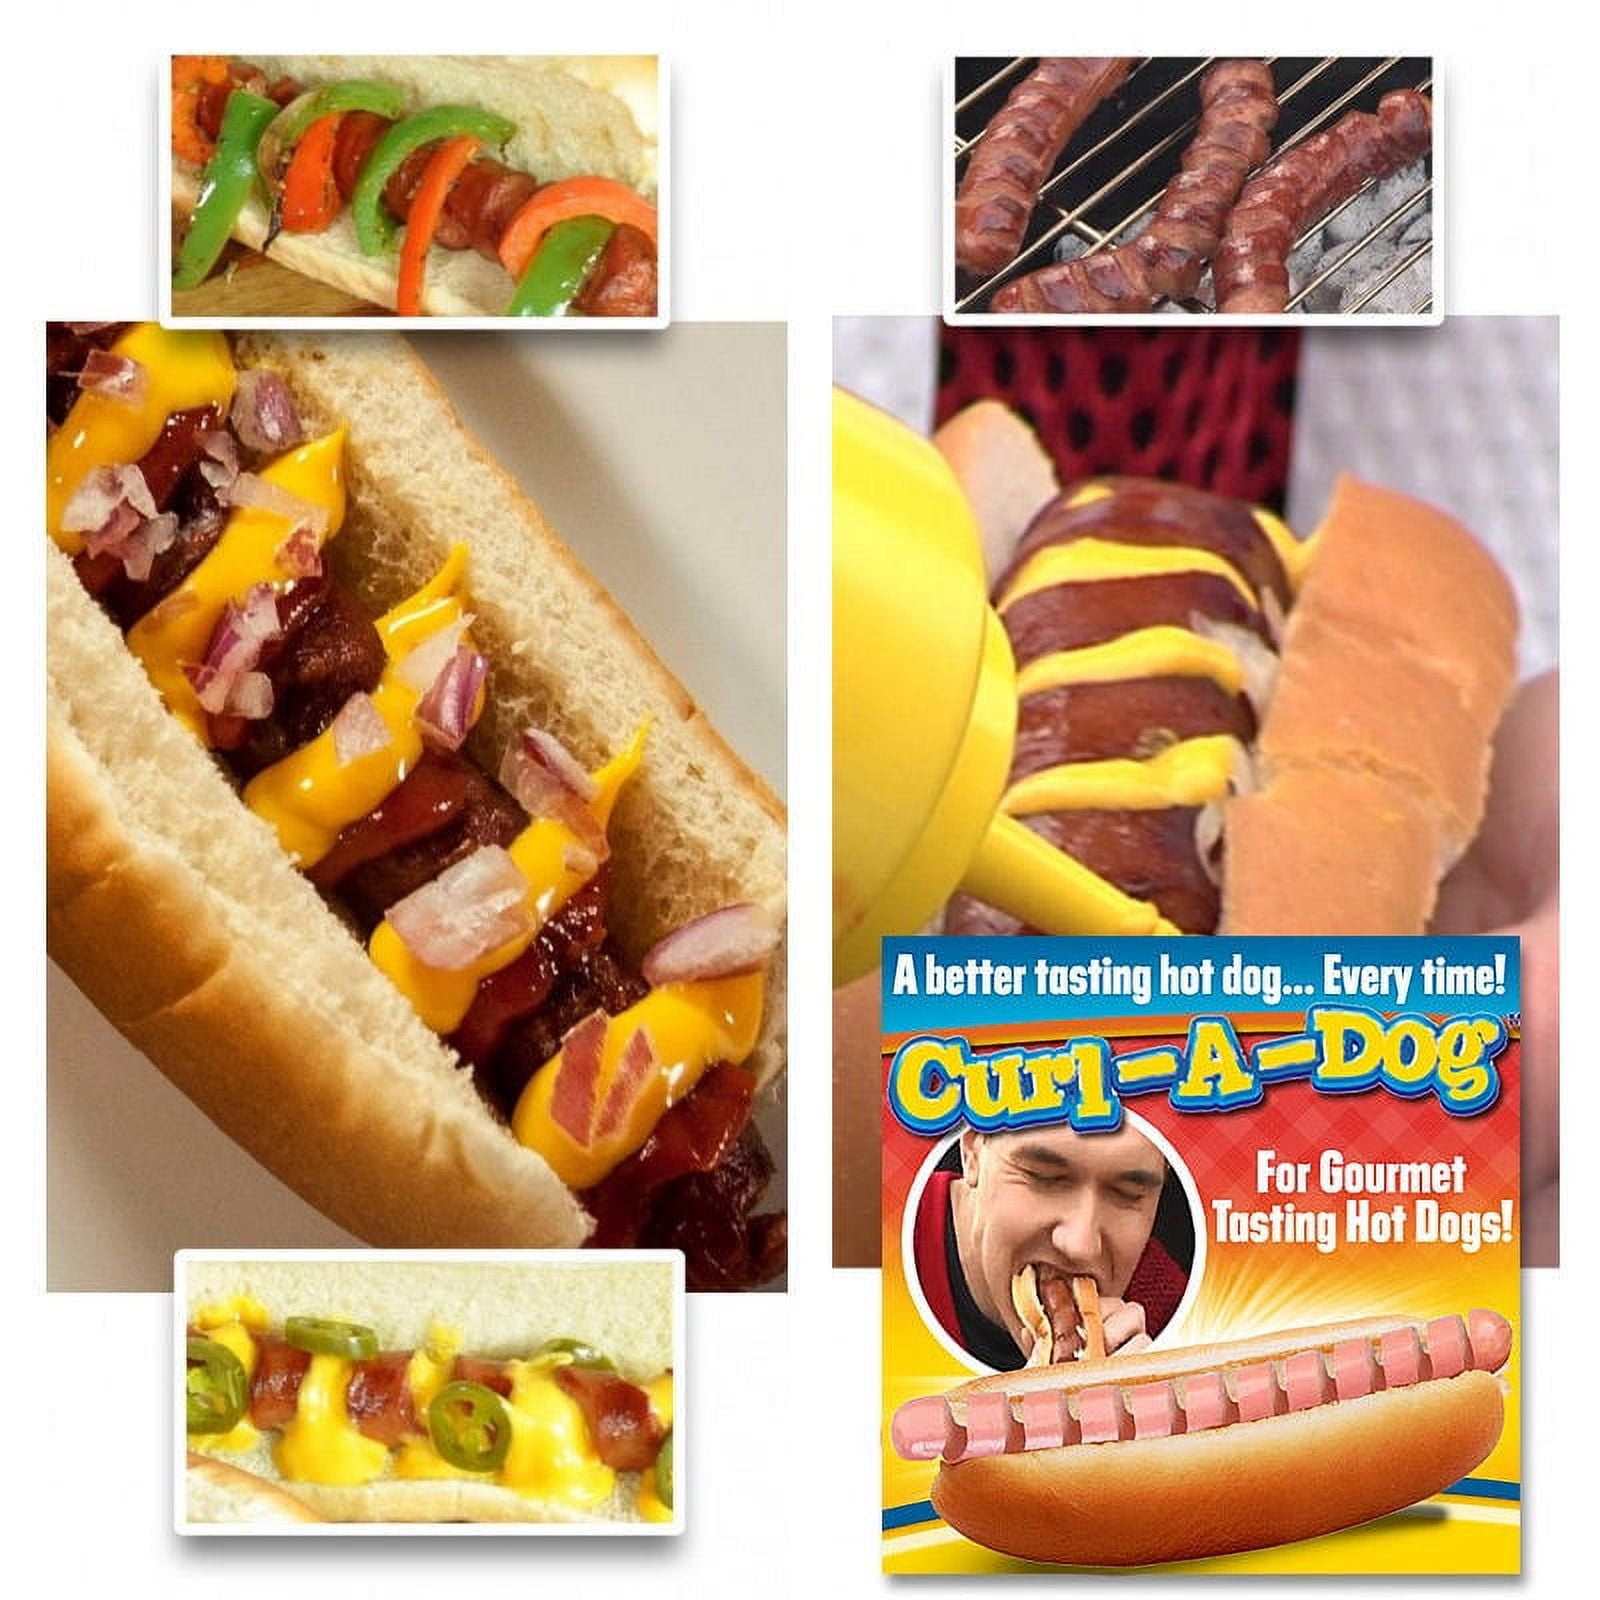 Curl-A-Dog Spiral Hot Dog Slicer Auction